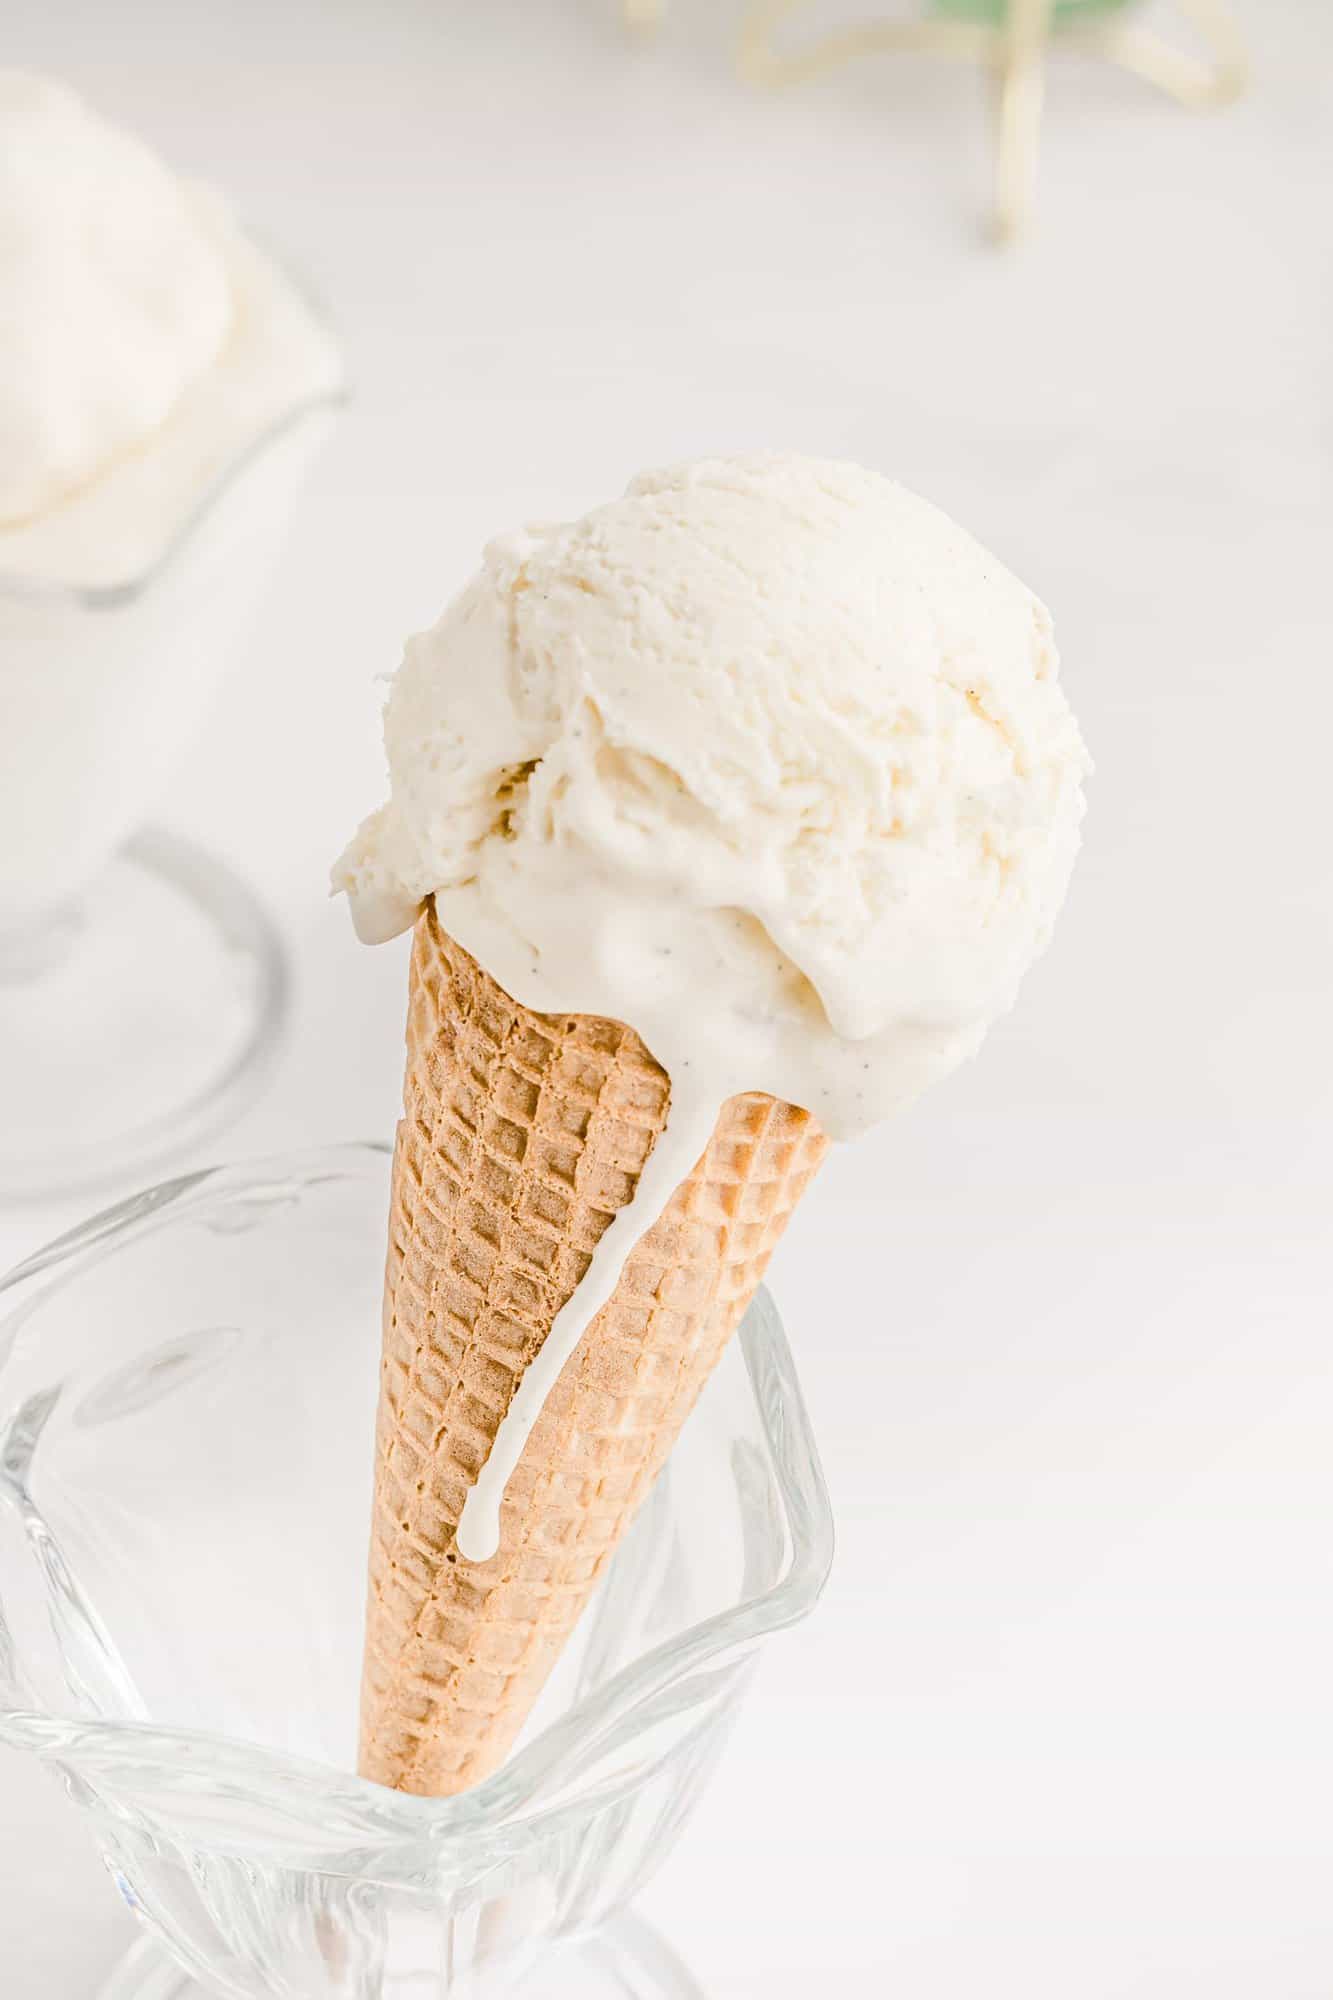 Vanilla ice cream in a cone, drip down the side.